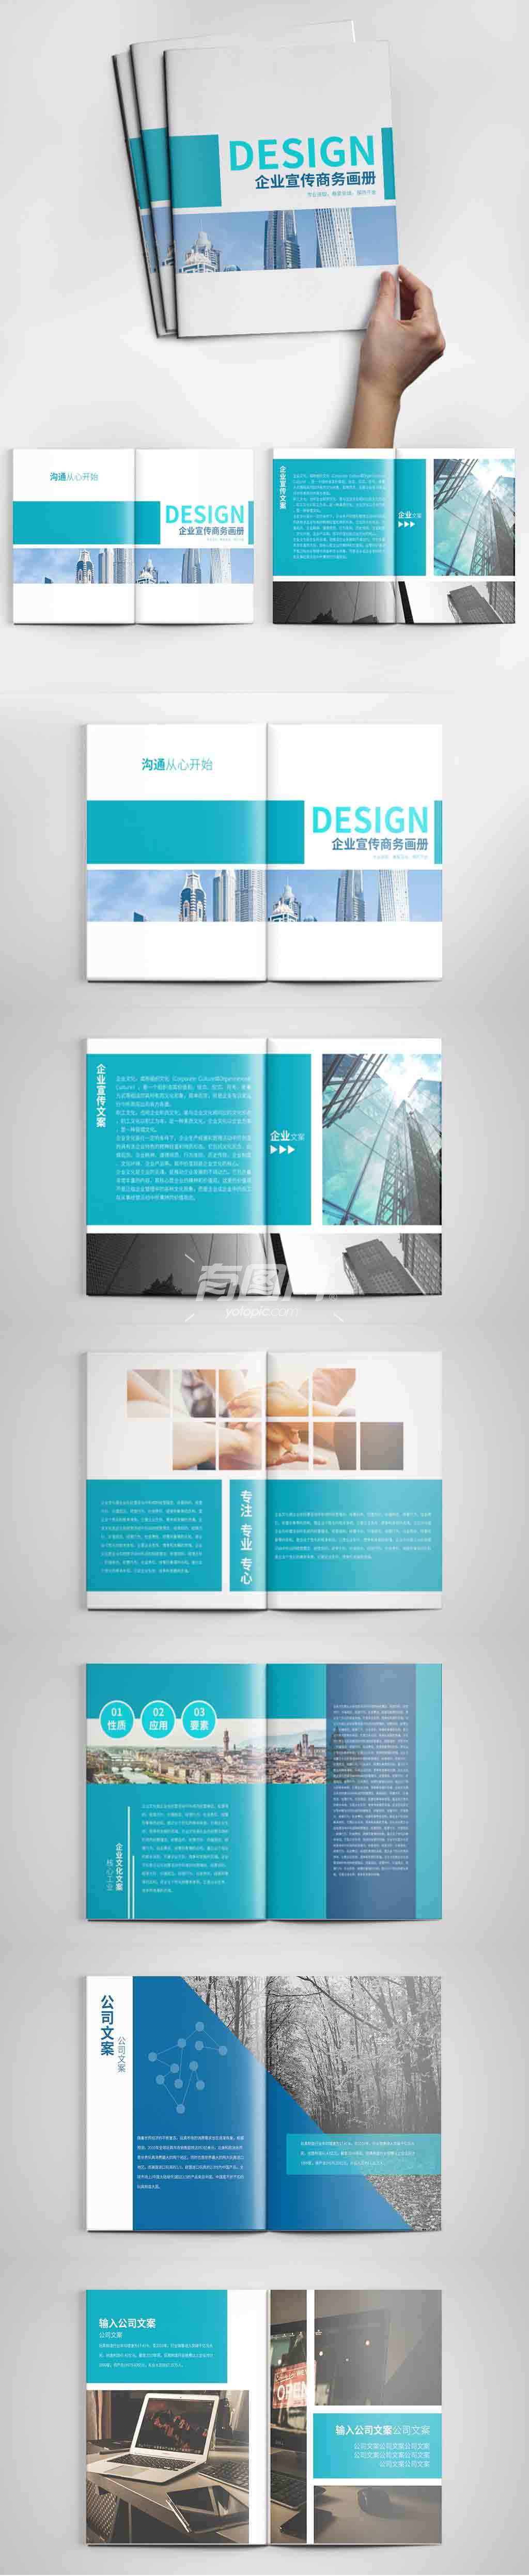 蓝色商务企业画册设计PSD模板